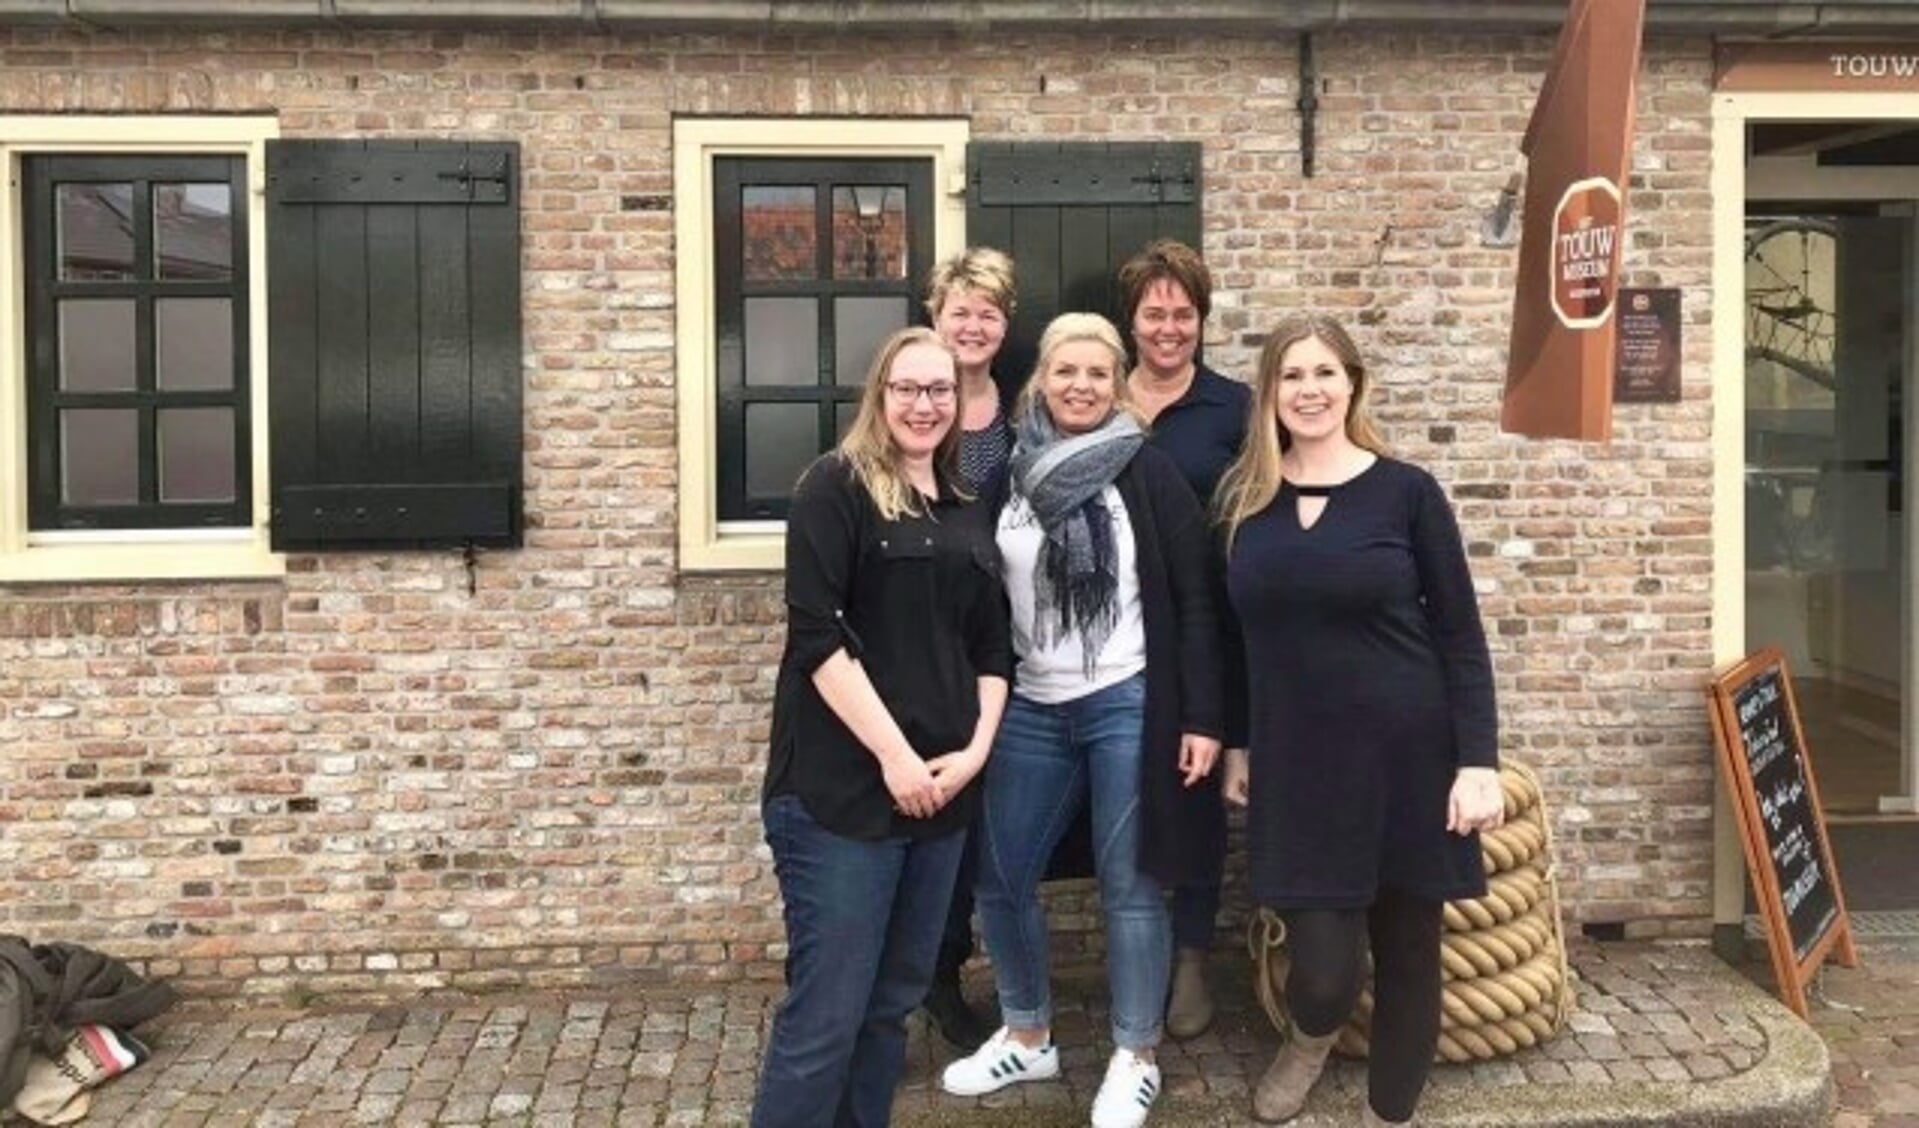 De organisatie achter de jaarmarkt: Carolien Sleeuwenhoek, Joanne Vlieland, Jolijn Slingerland,Angela Melkert en Conny de Jong. (Foto: PR)